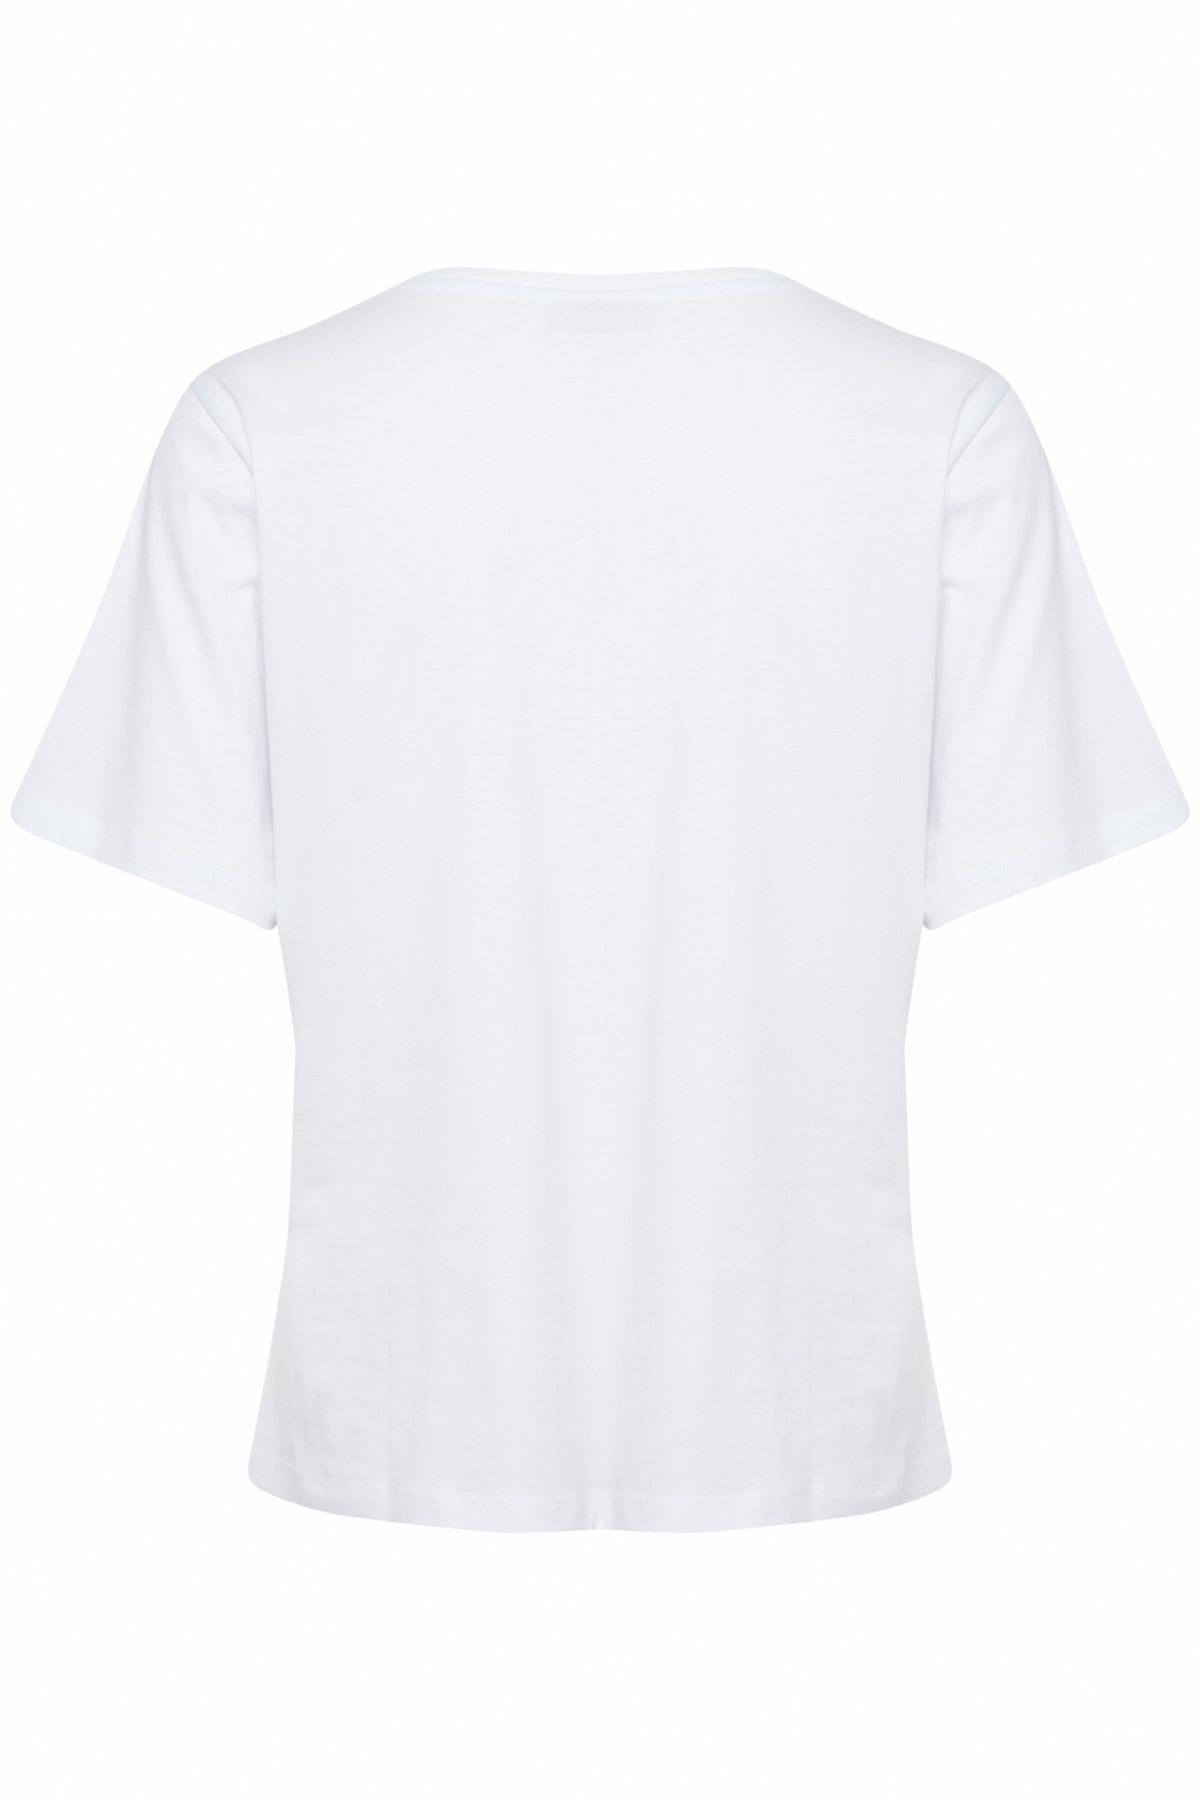 Sia T-Shirt- Bright White